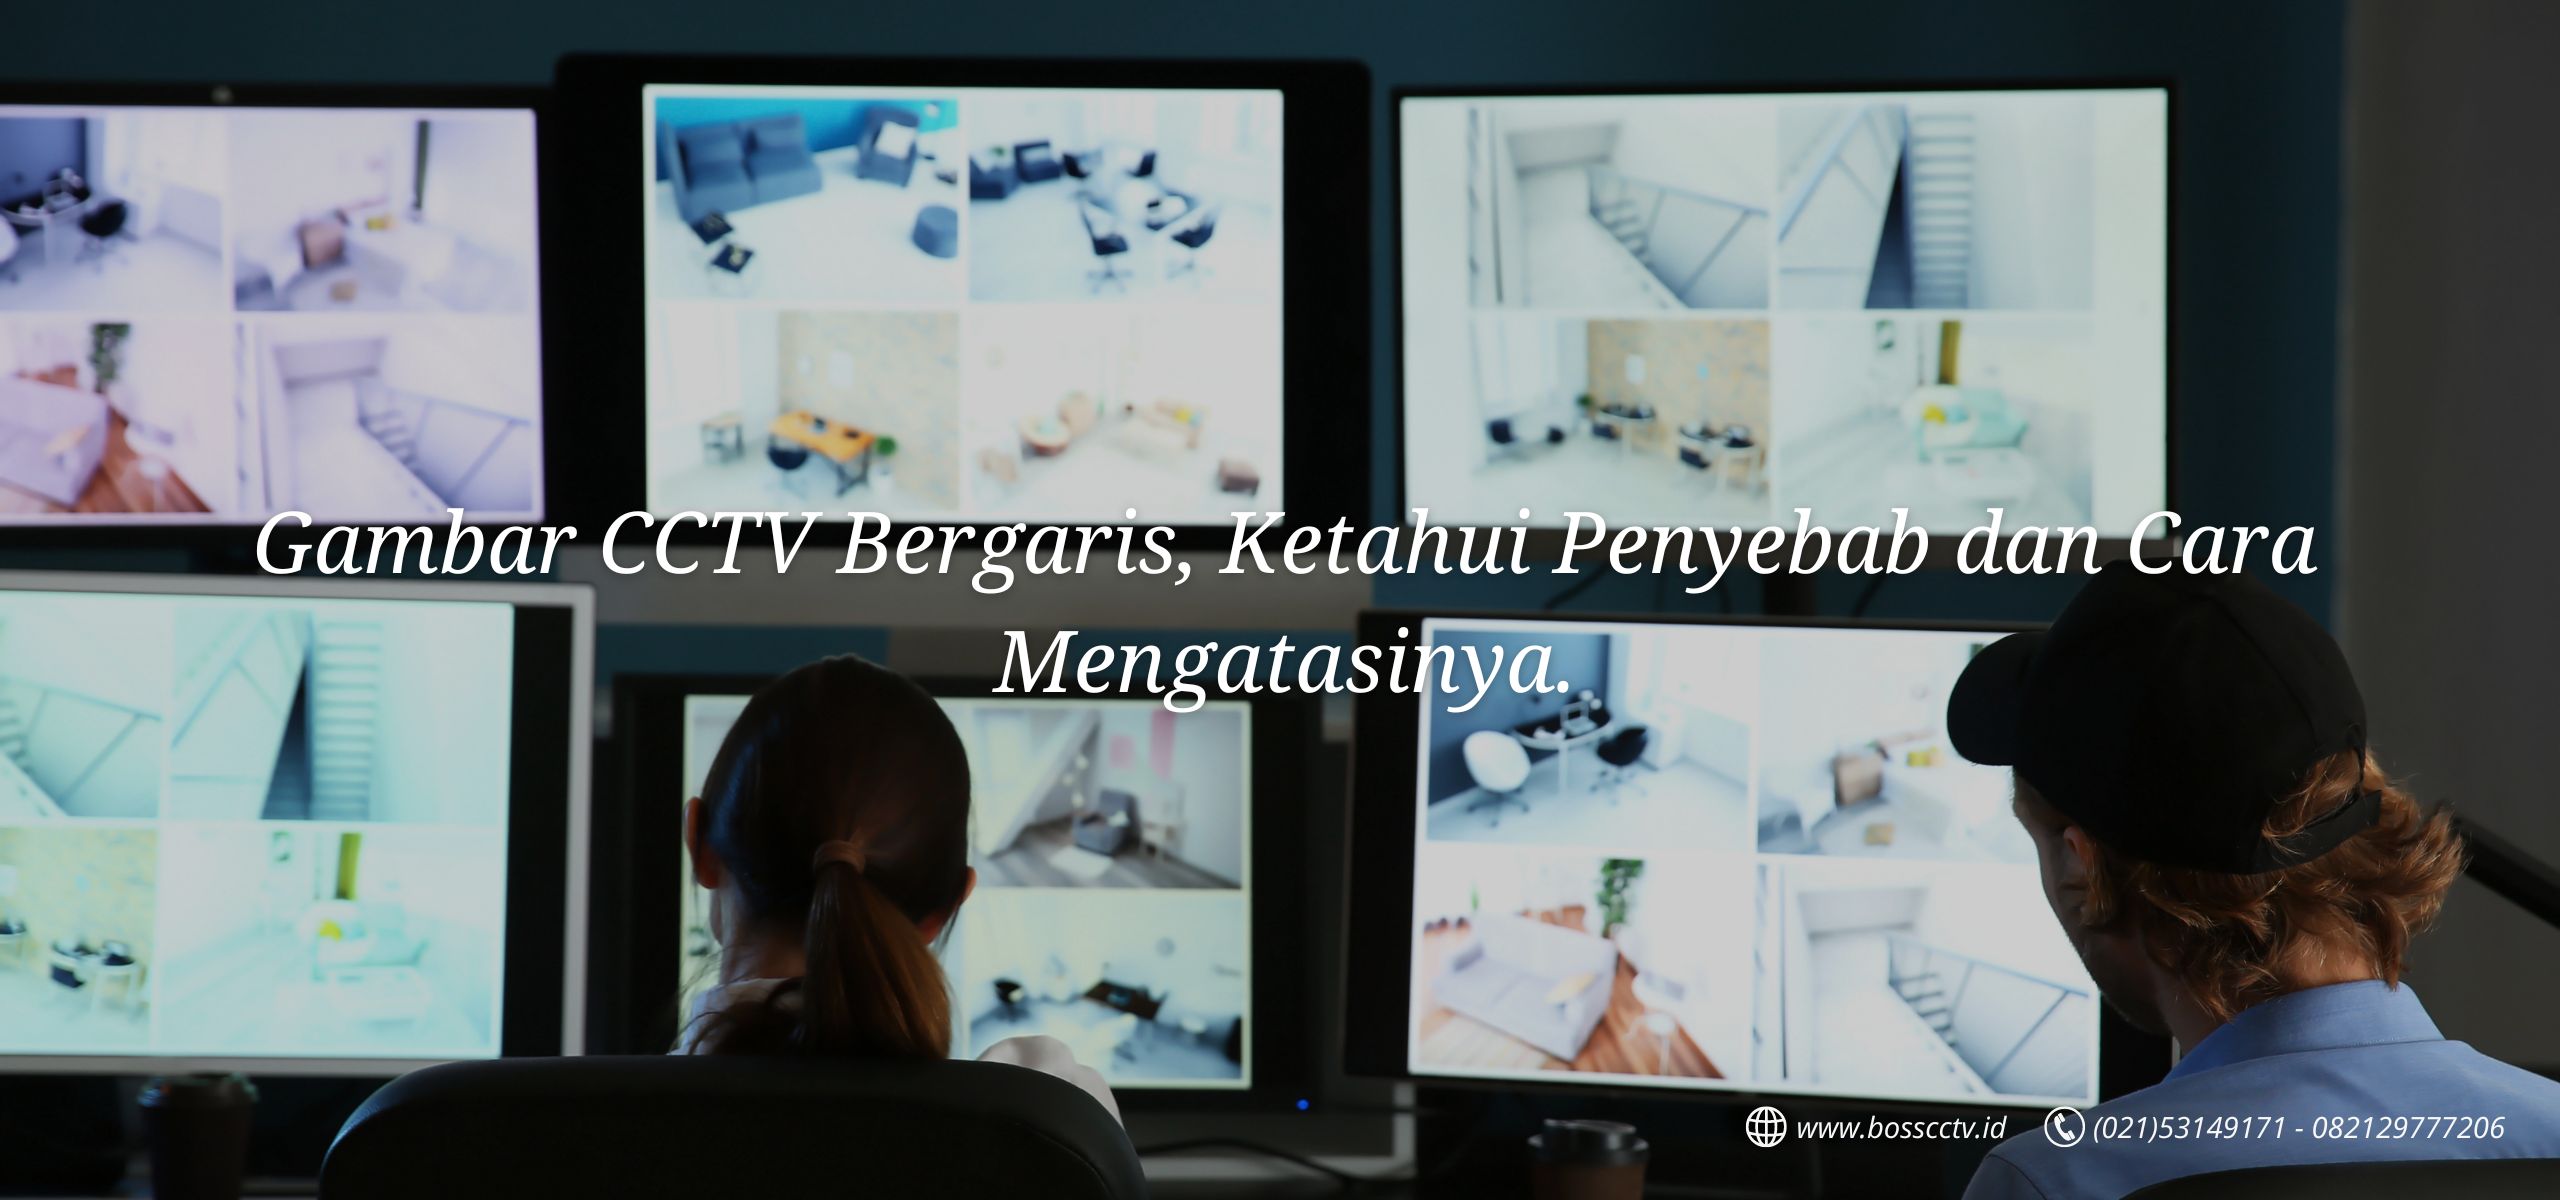 Mengatasi CCTV Bergaris, Tanpa Bantuan Teknisi.